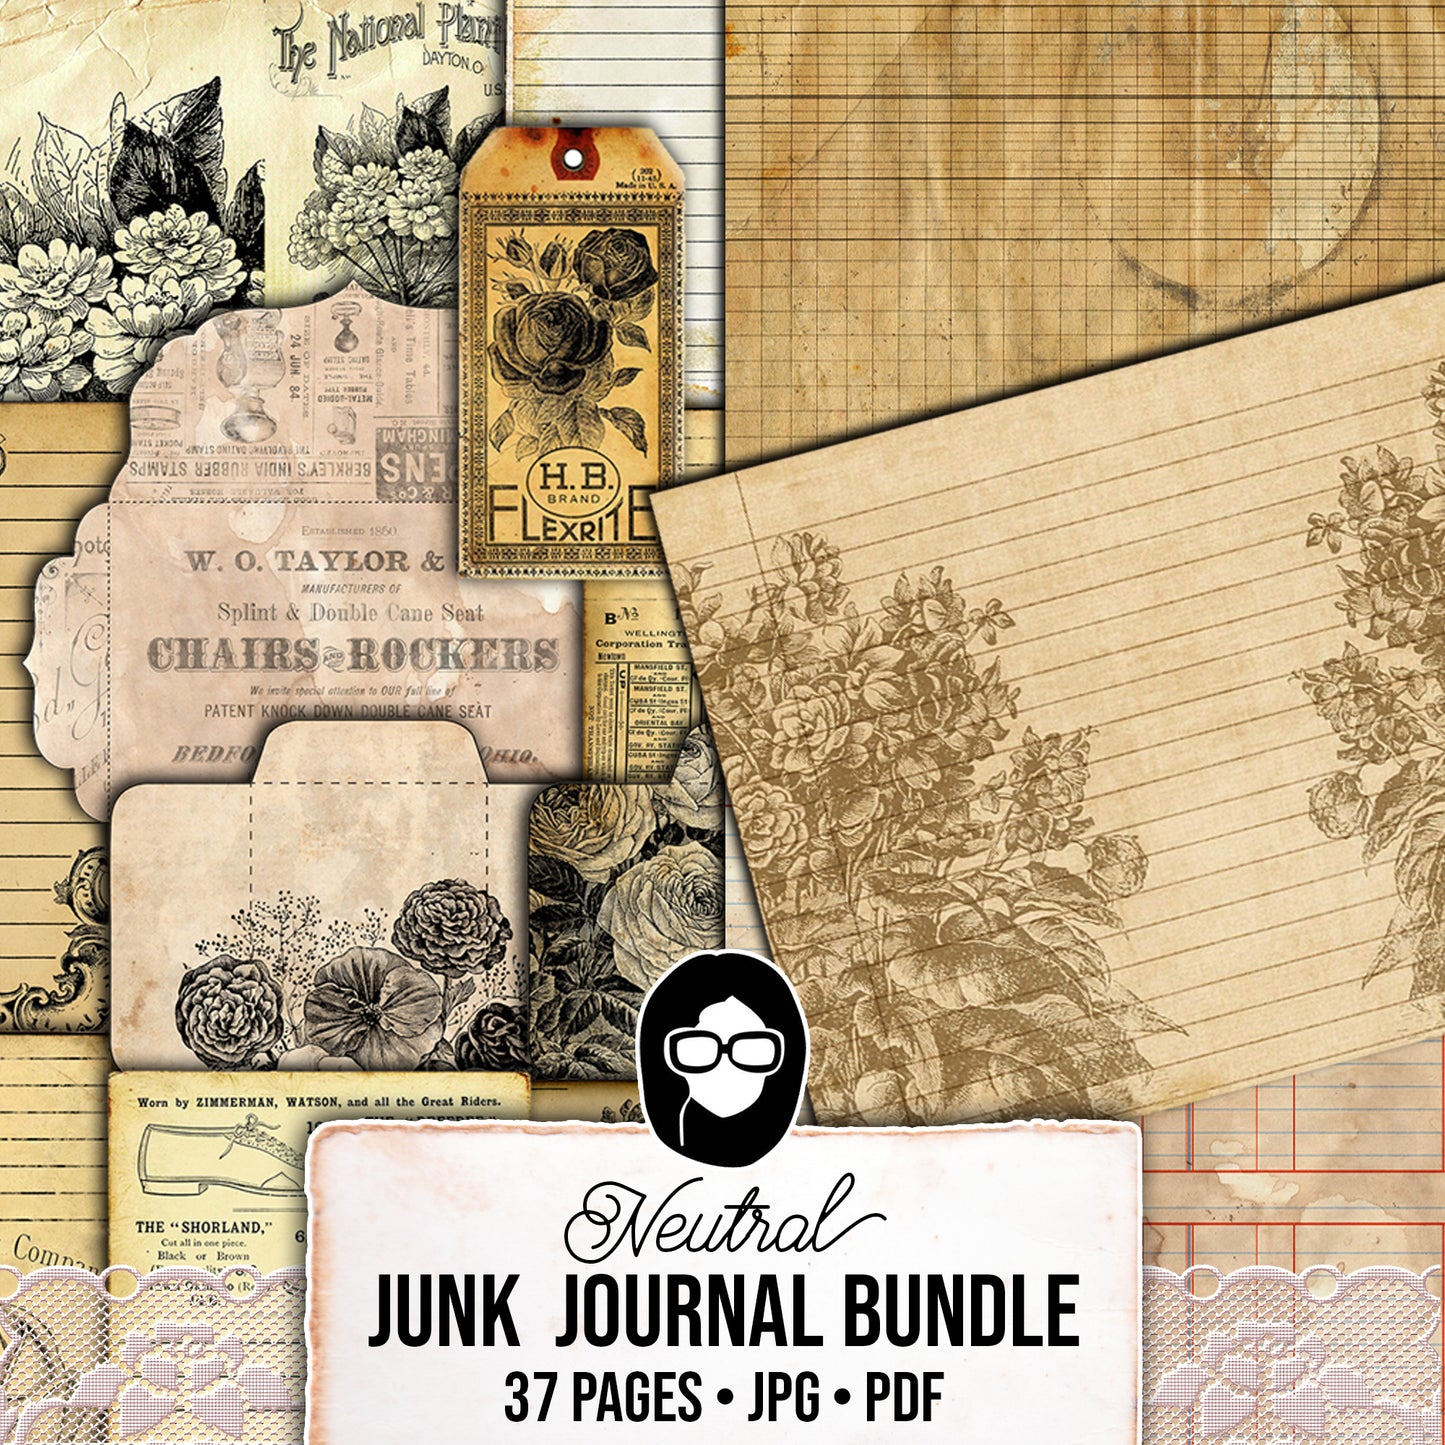 Junk Journal Starter Kit, Neutral Journal Ephemera, Bundle #4 -37pg Digital Download- Cards, Pockets, Tags, Envelopes, Printable Vintage Art